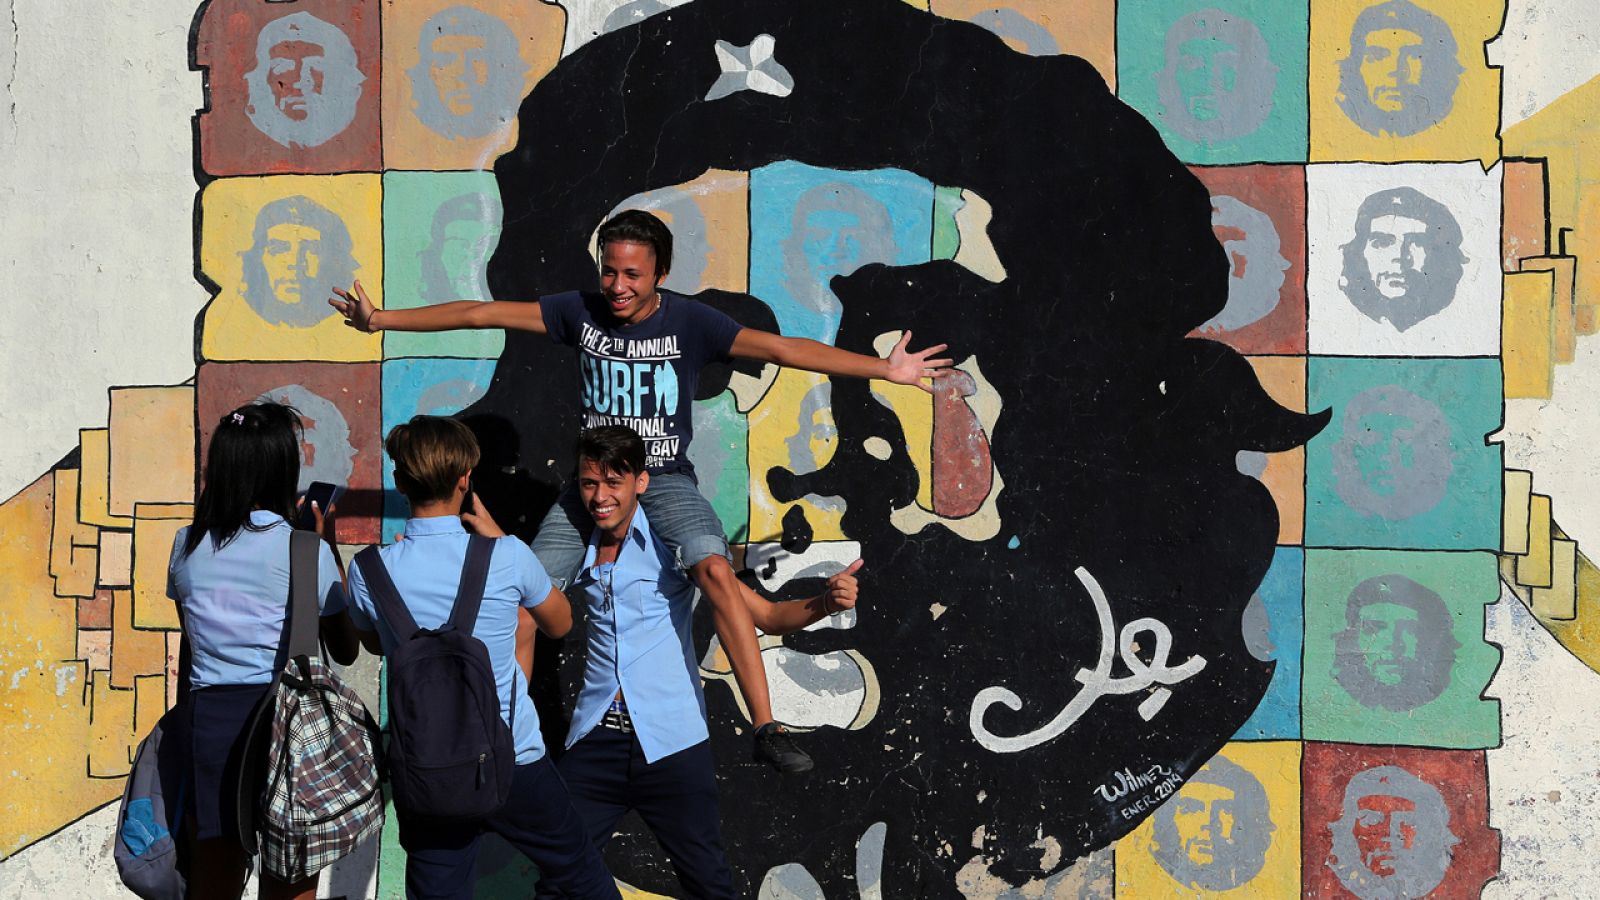 Varios jóvenes posan junto a una imagen del Che Guevara, en La Habana